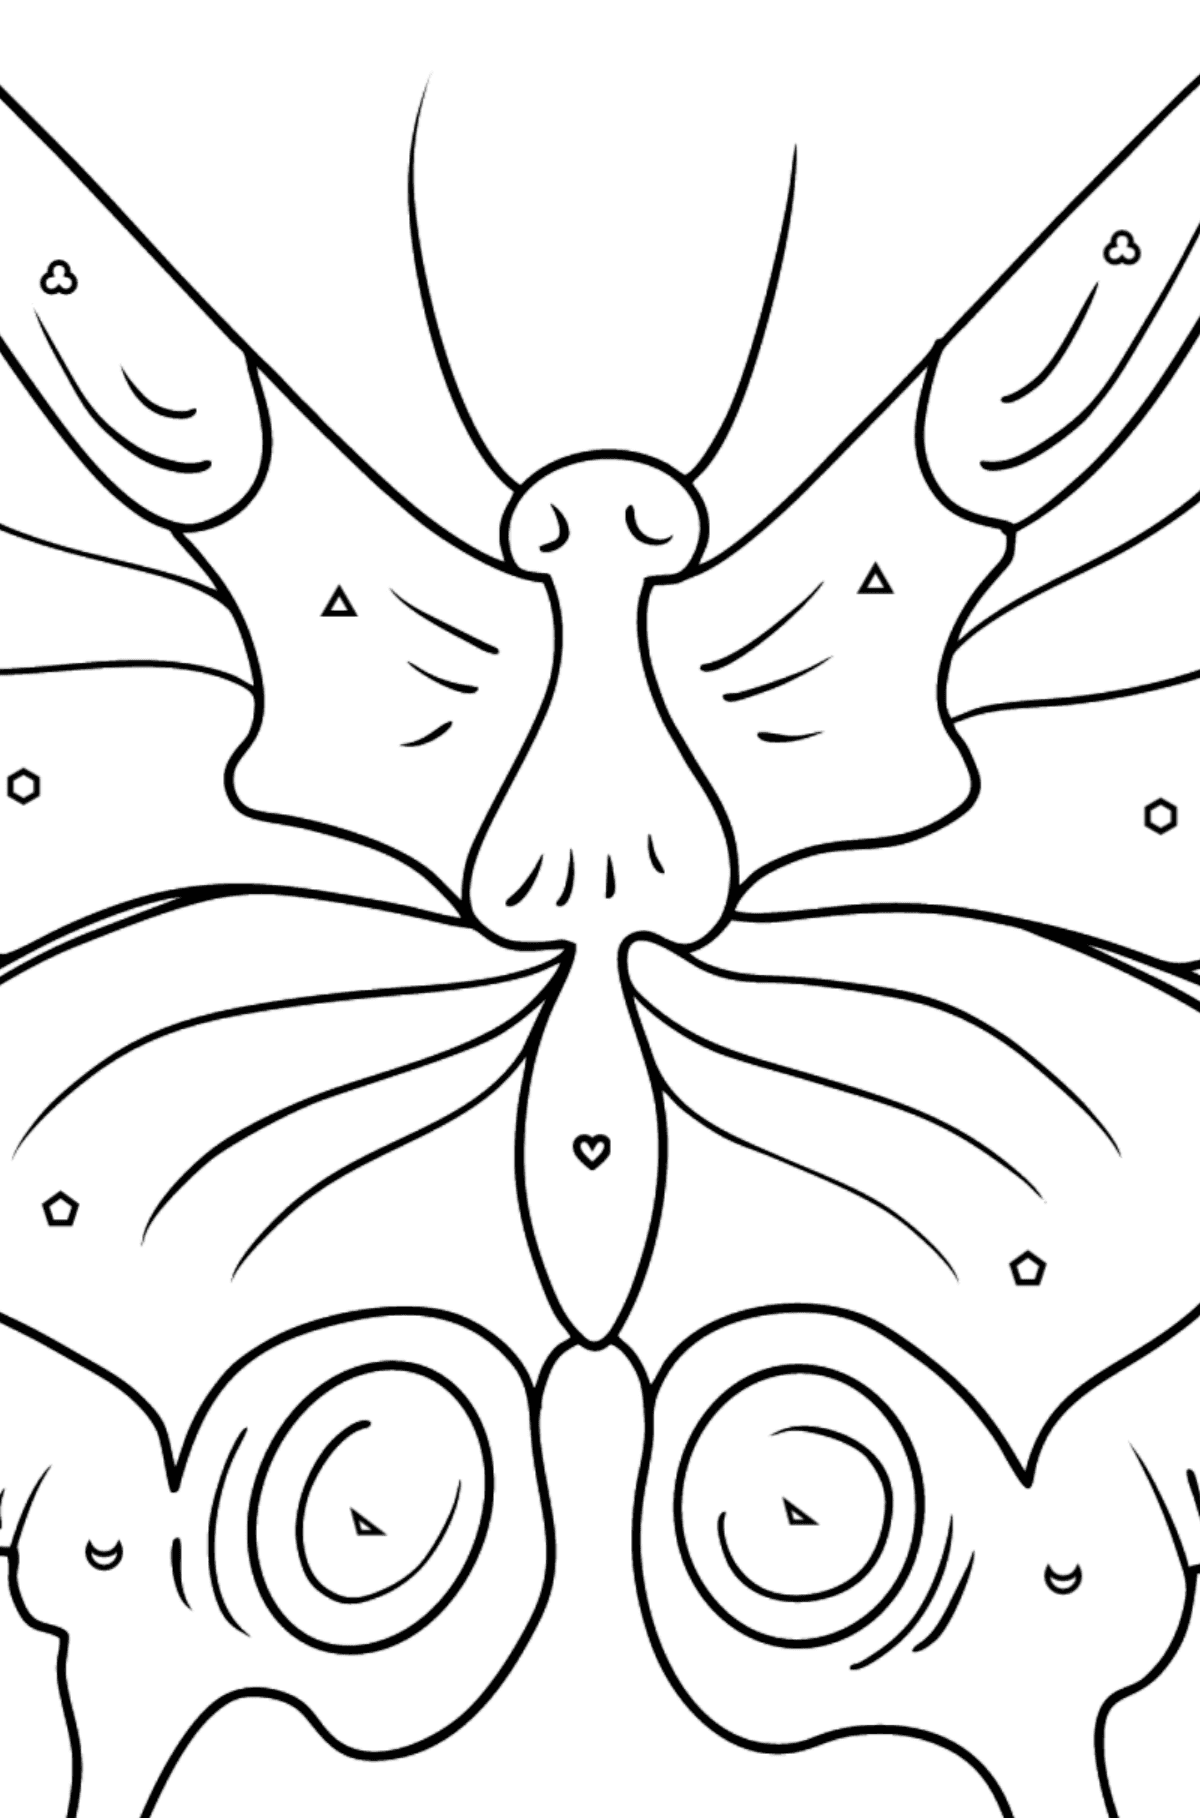 Kolorowanka Motyl paziowaty - Kolorowanie według figur geometrycznych dla dzieci